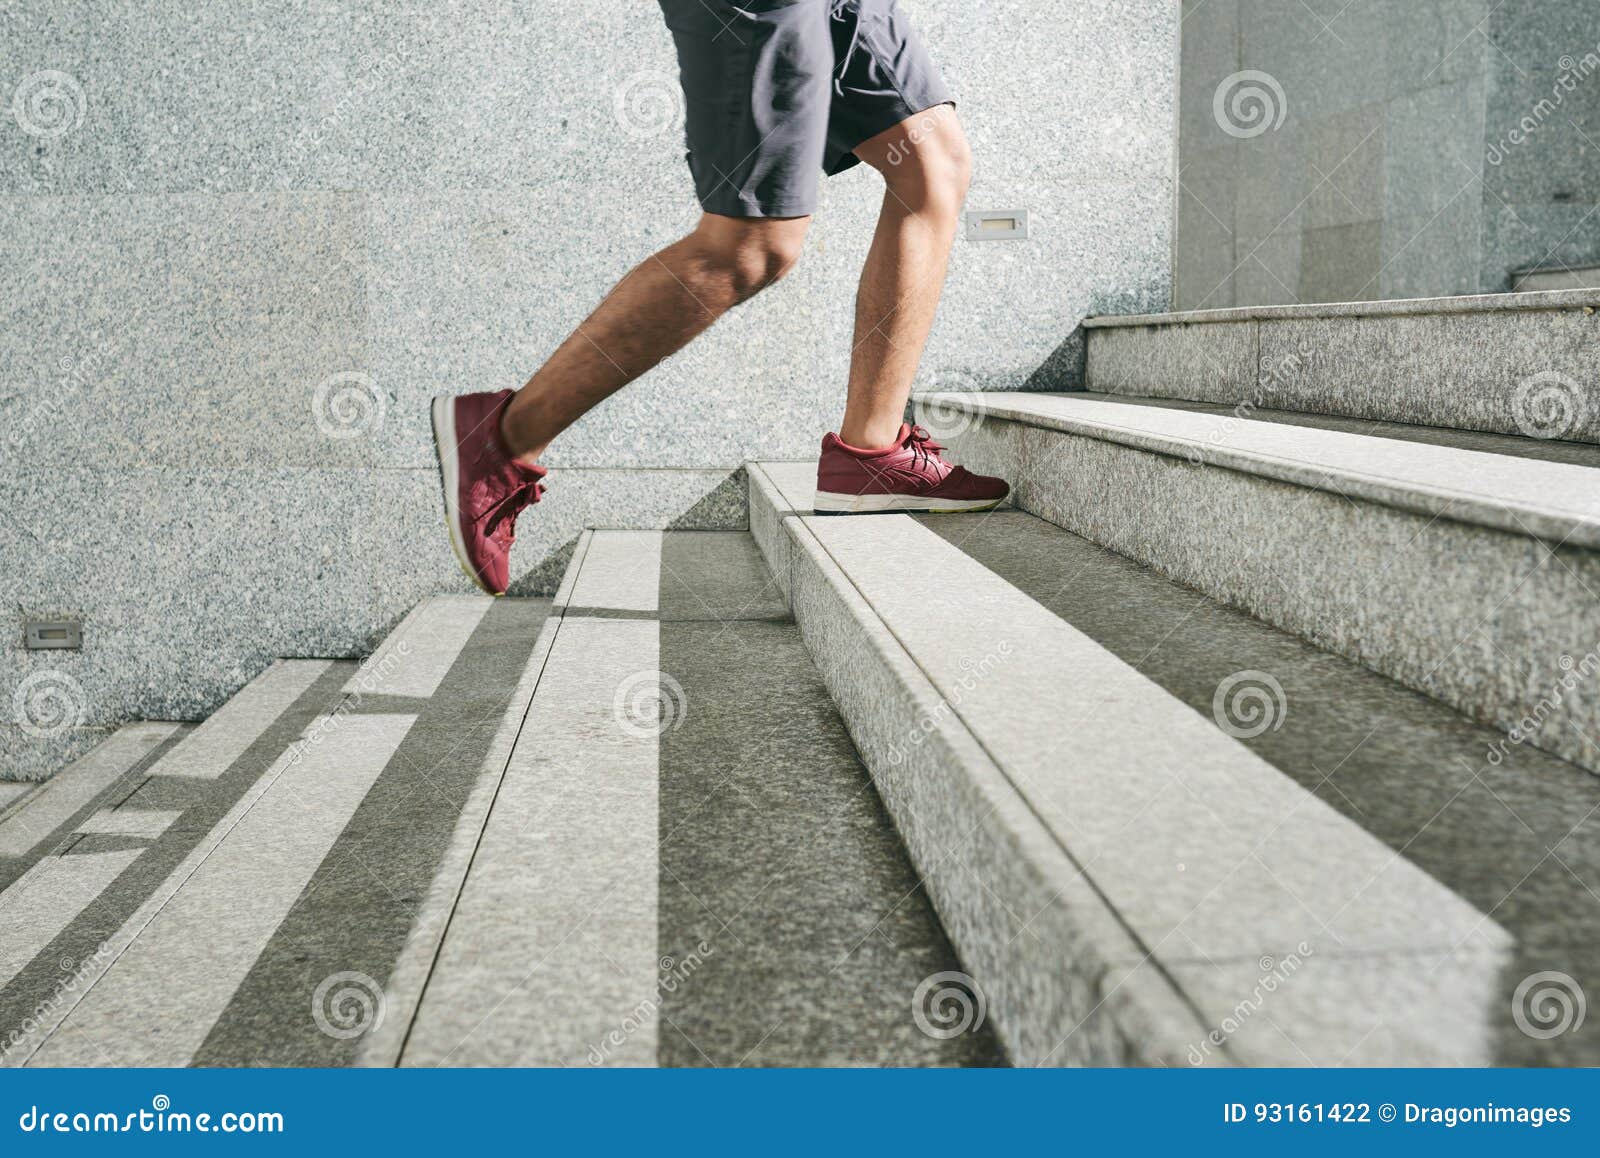 Темно шагать. Ступенька для ног. Ноги идут по ступенькам. Человек на ступеньках. Нога человека на лестнице.